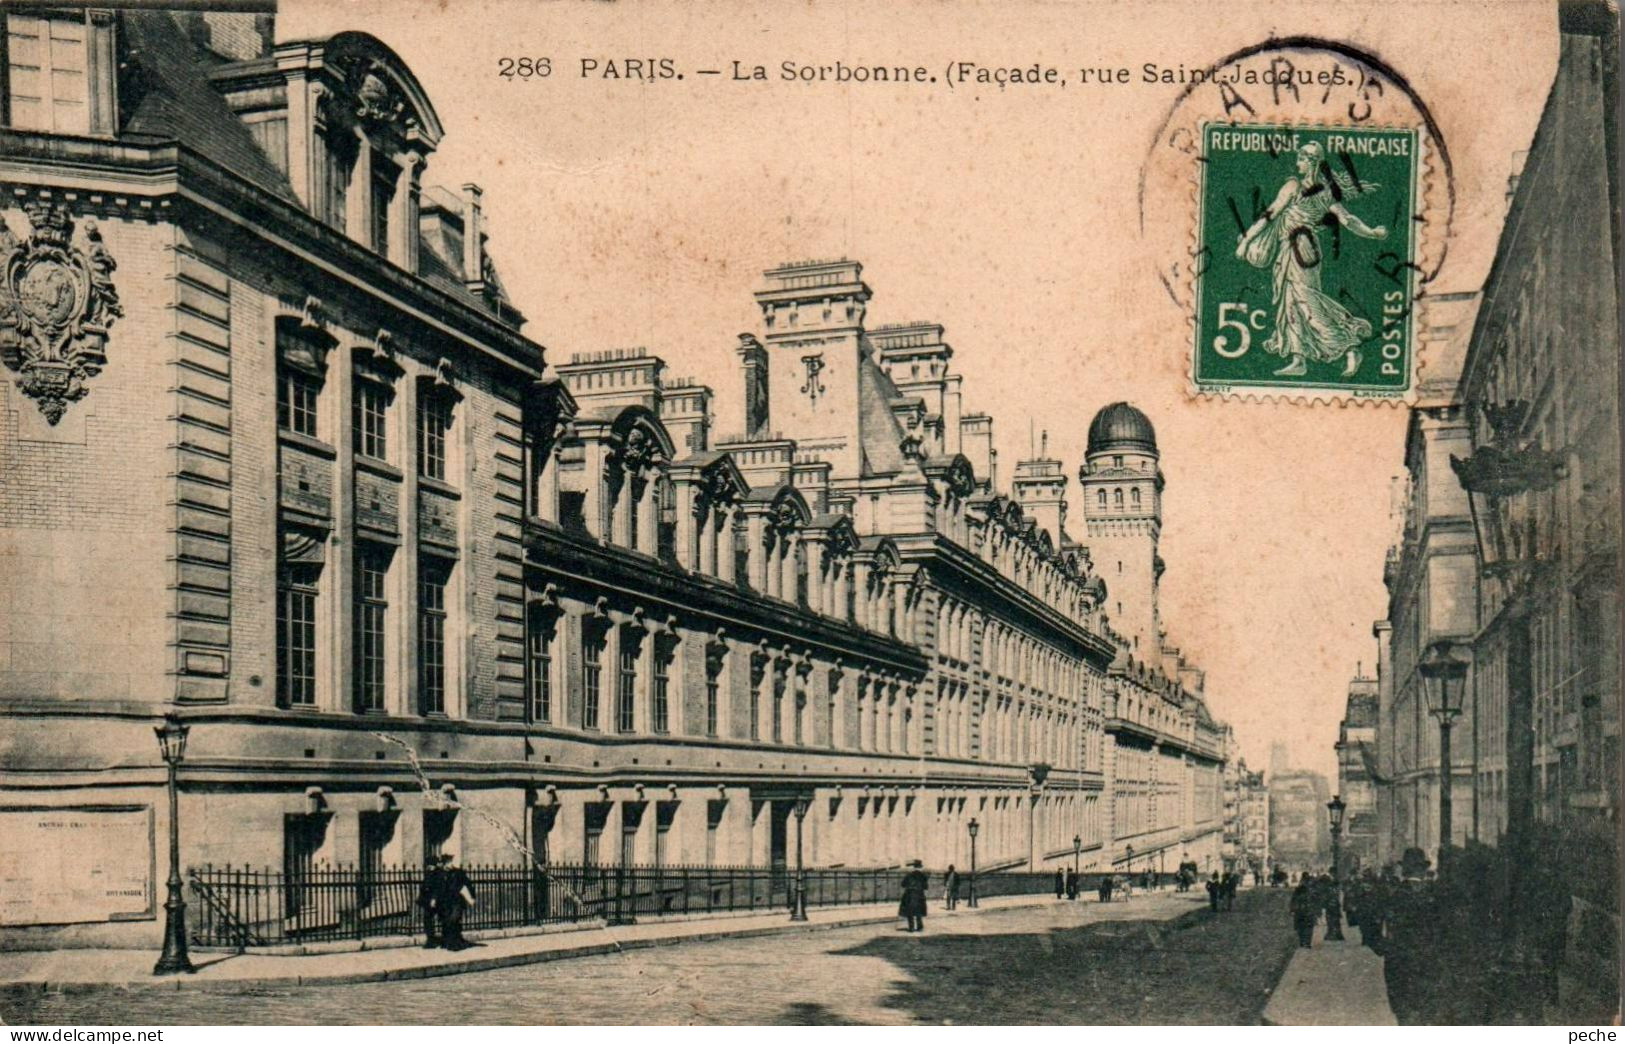 N°1870 W -cpa Paris -la Sorbonne- - Education, Schools And Universities